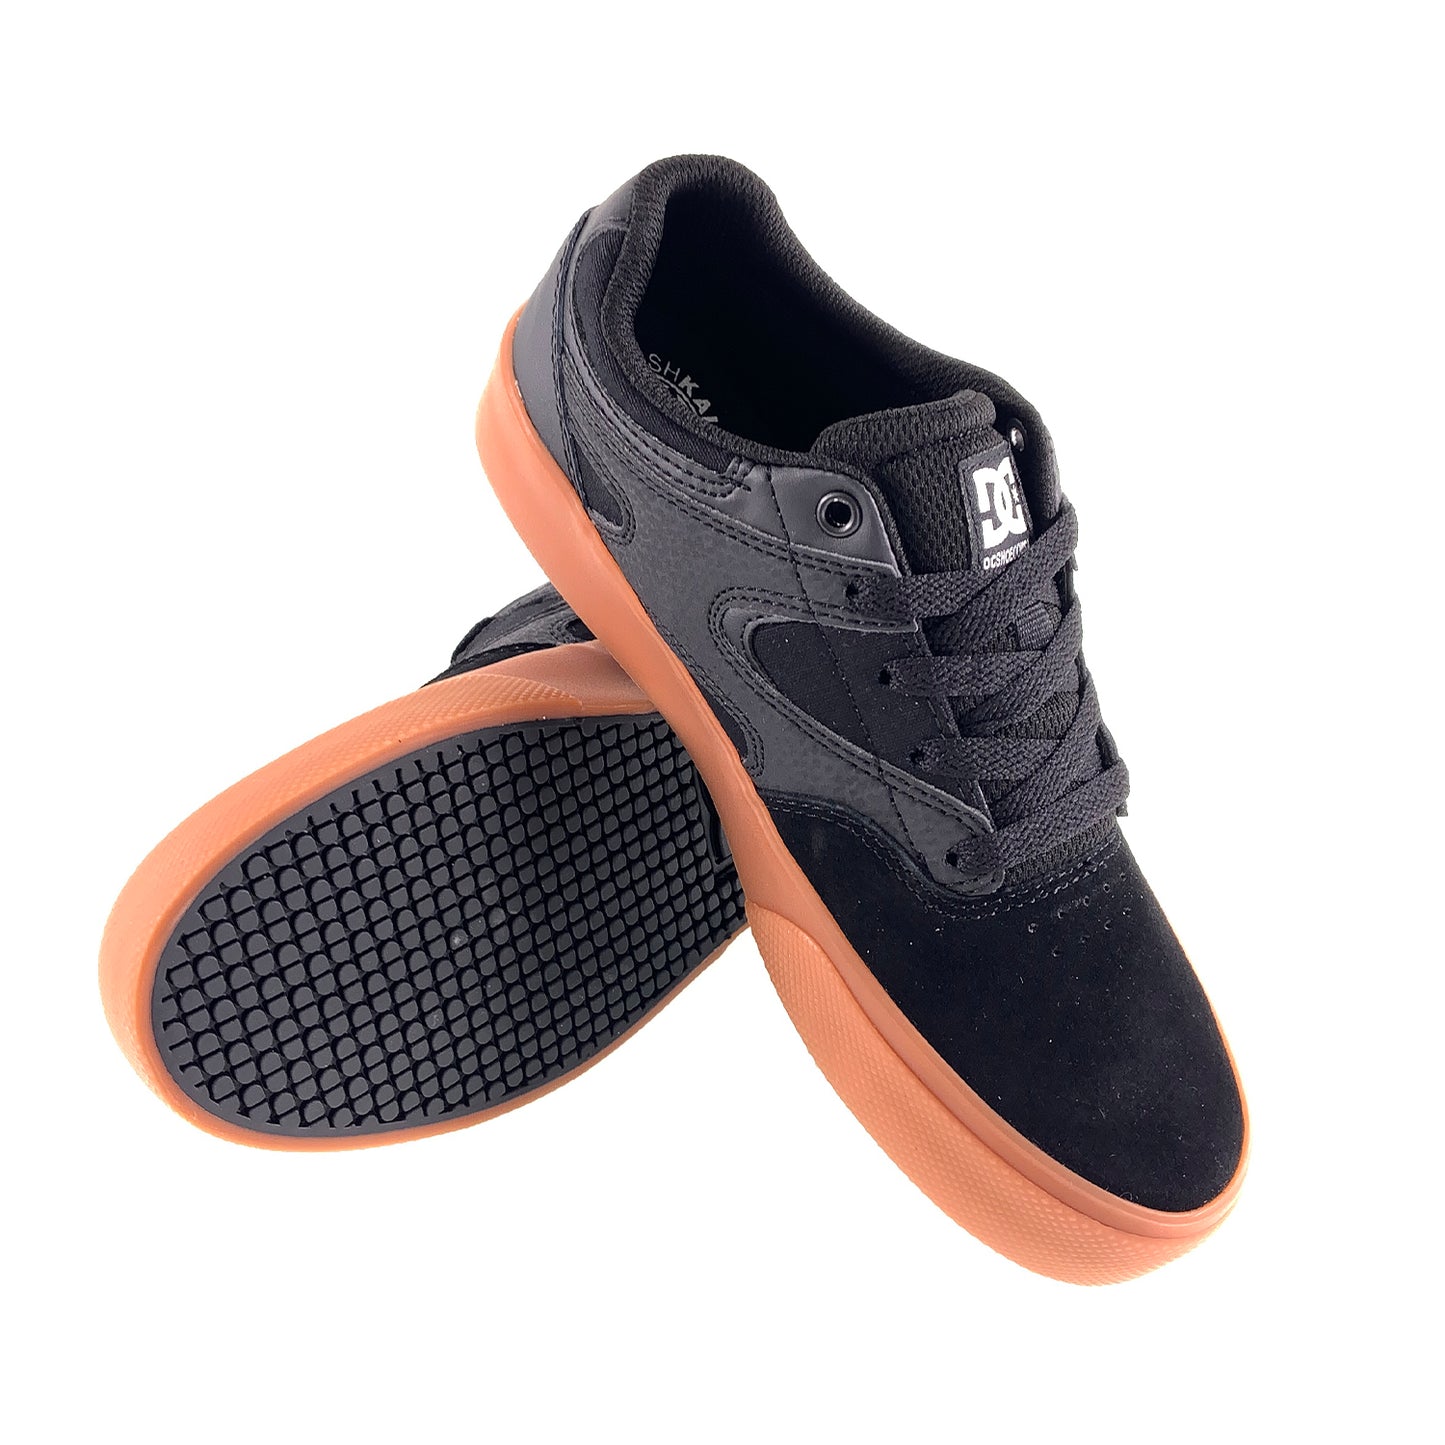 DC Shoes Kids Kalis Vulc Skate Shoes - Black / Black / Gum - Prime Delux Store